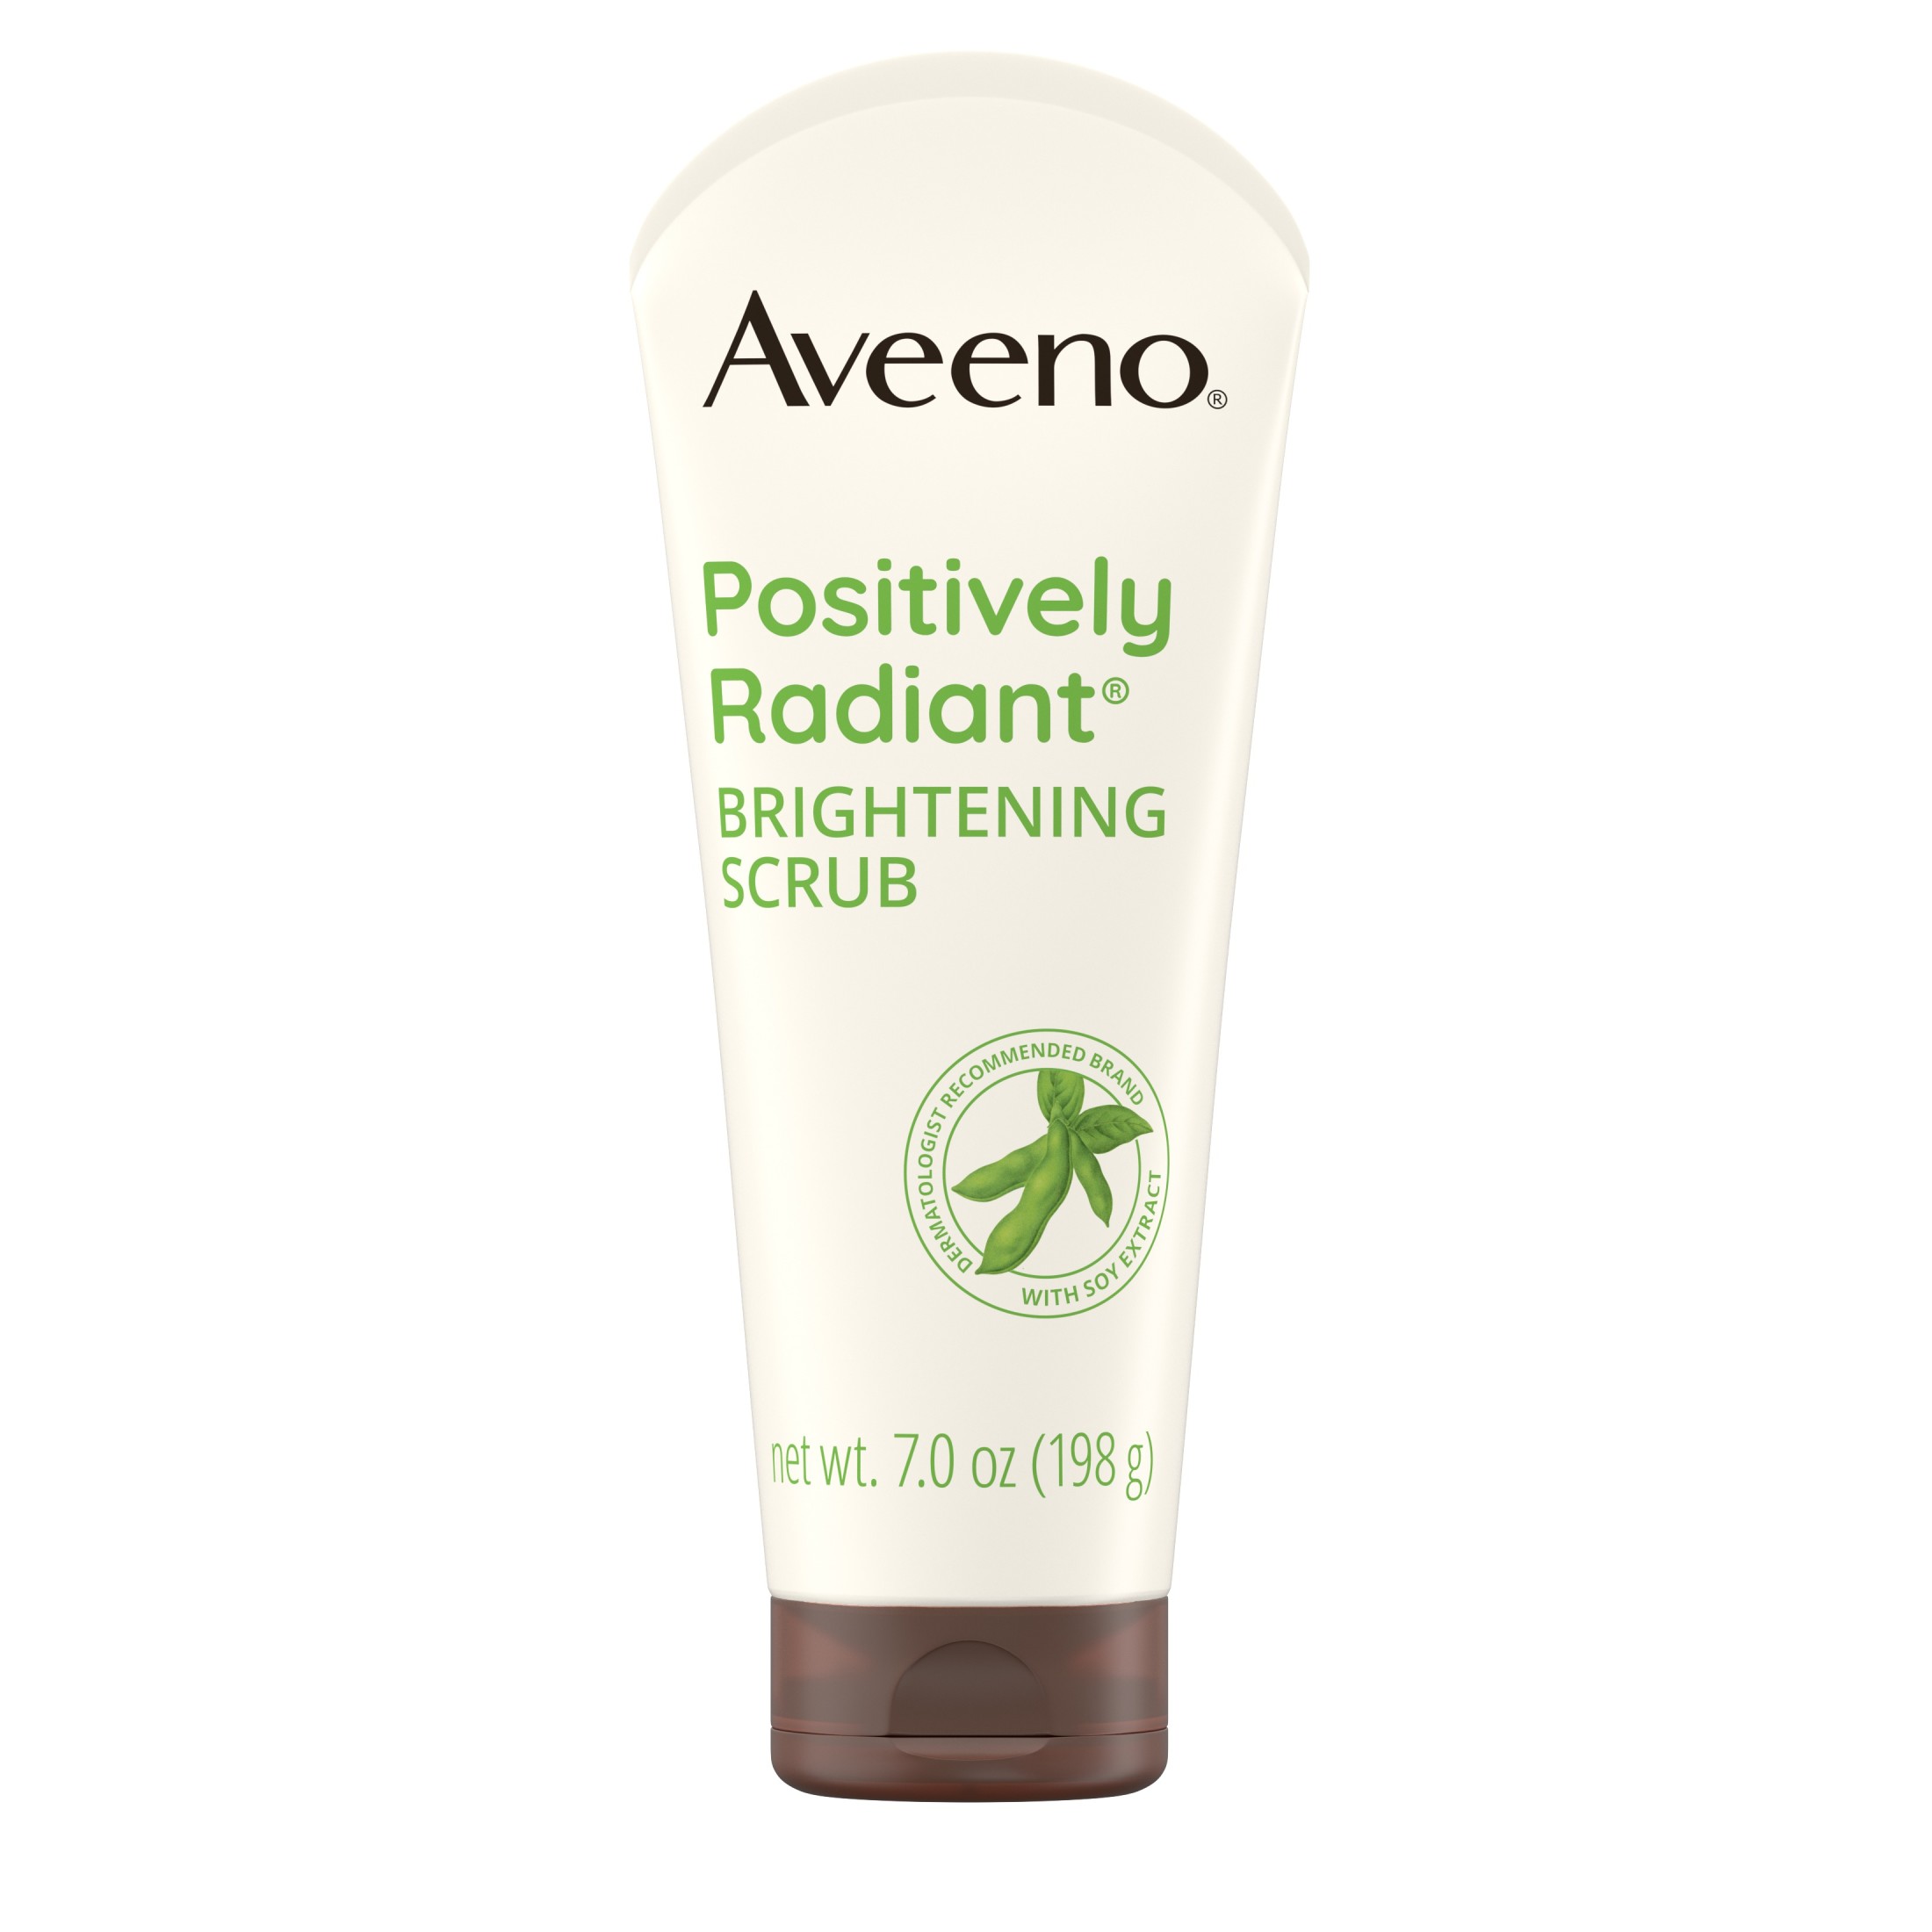 Aveeno Positively Radiant Brightening & Exfoliating Face Scrub, 7 oz - image 1 of 9